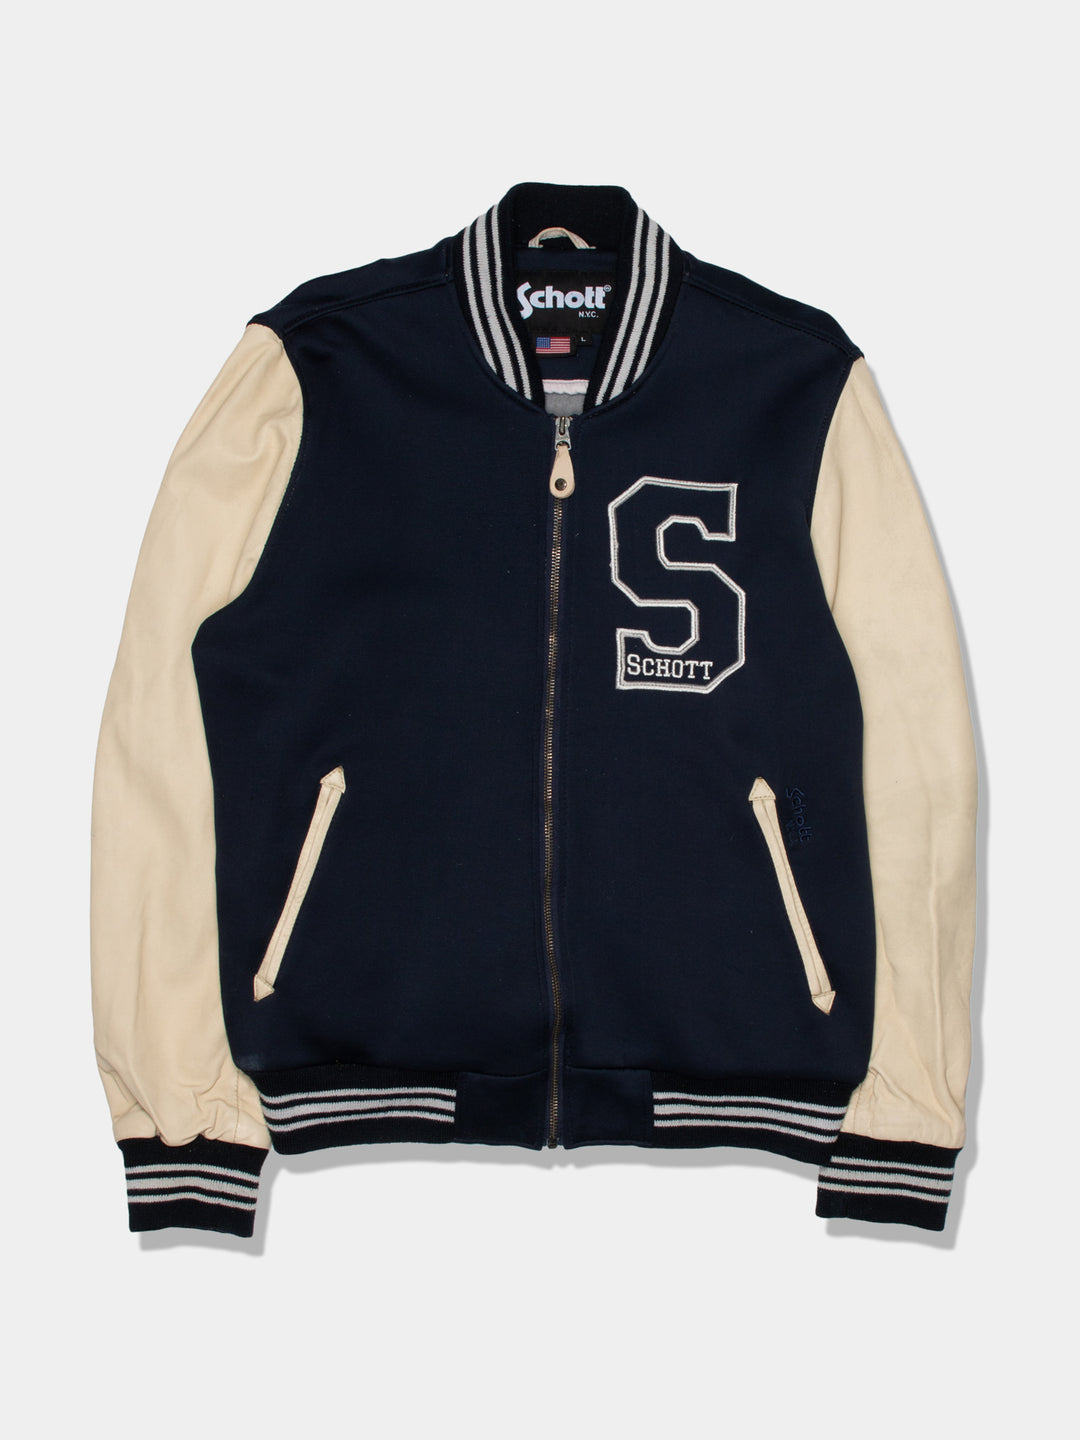 90s Schott Varsity Jacket (L)